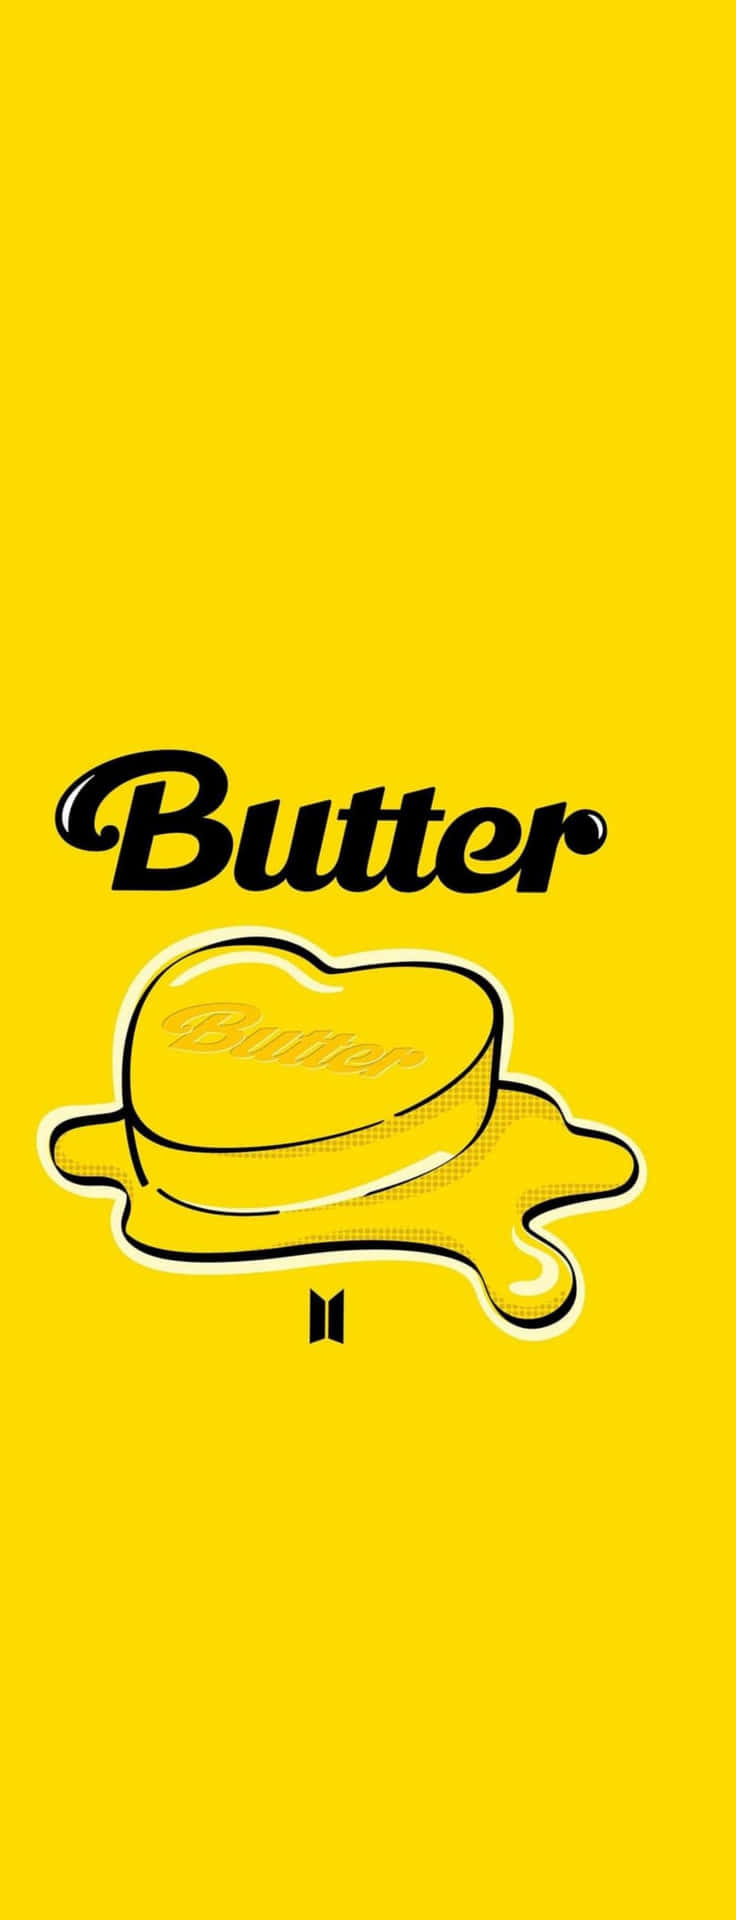 Btscelebra El Lanzamiento De Su Nuevo Sencillo 'butter'